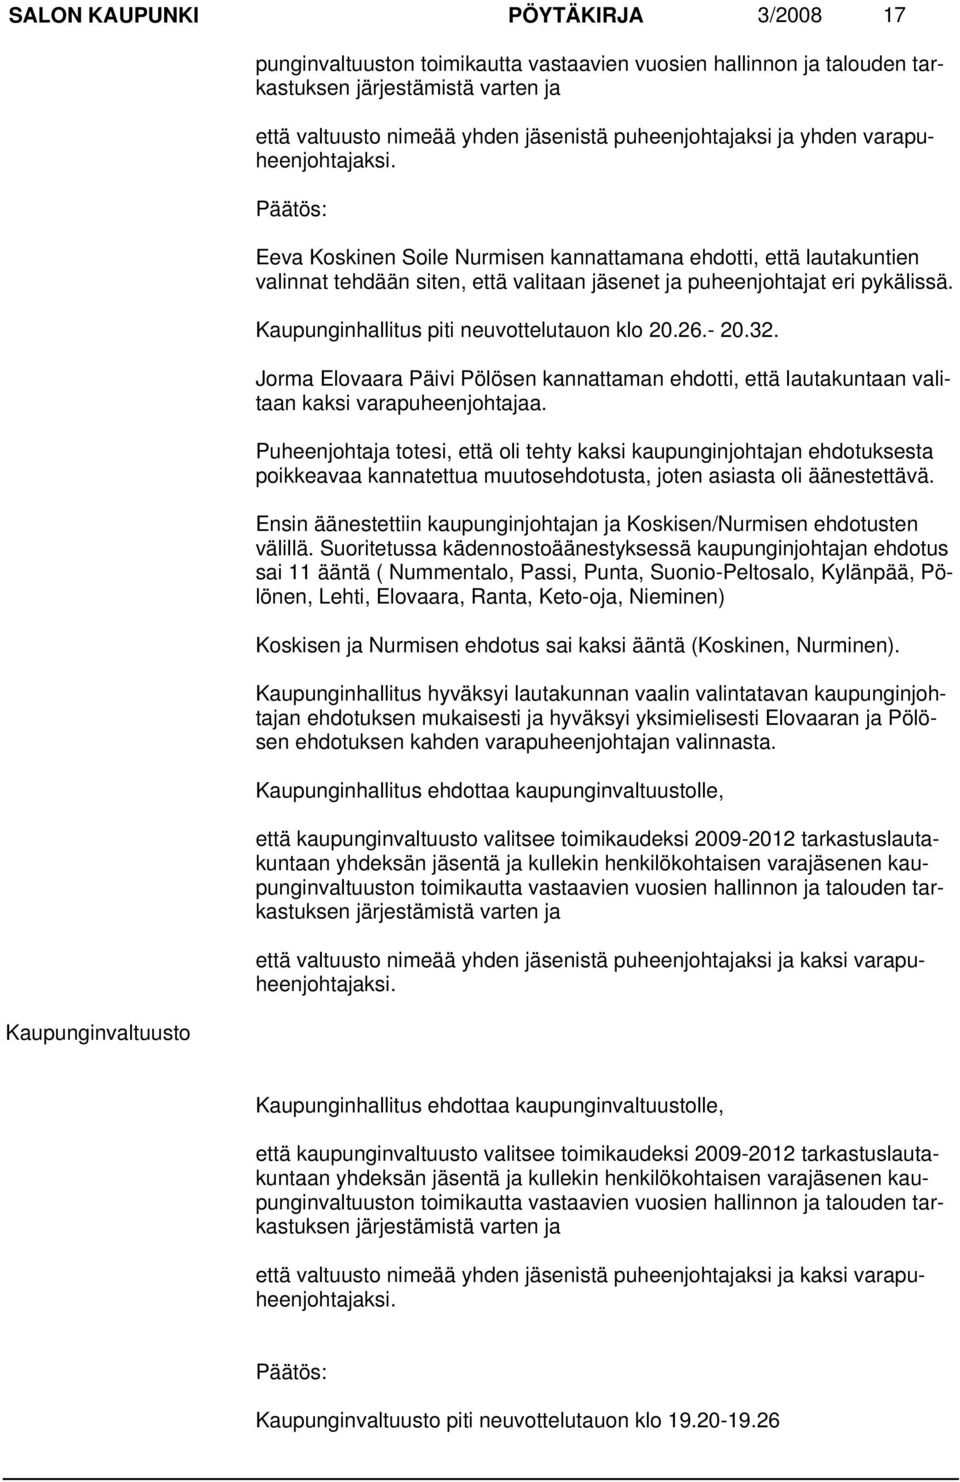 Kaupunginhallitus piti neuvottelutauon klo 20.26.- 20.32. Jorma Elovaara Päivi Pölösen kannattaman ehdotti, että lautakuntaan valitaan kaksi varapuheenjohtajaa.